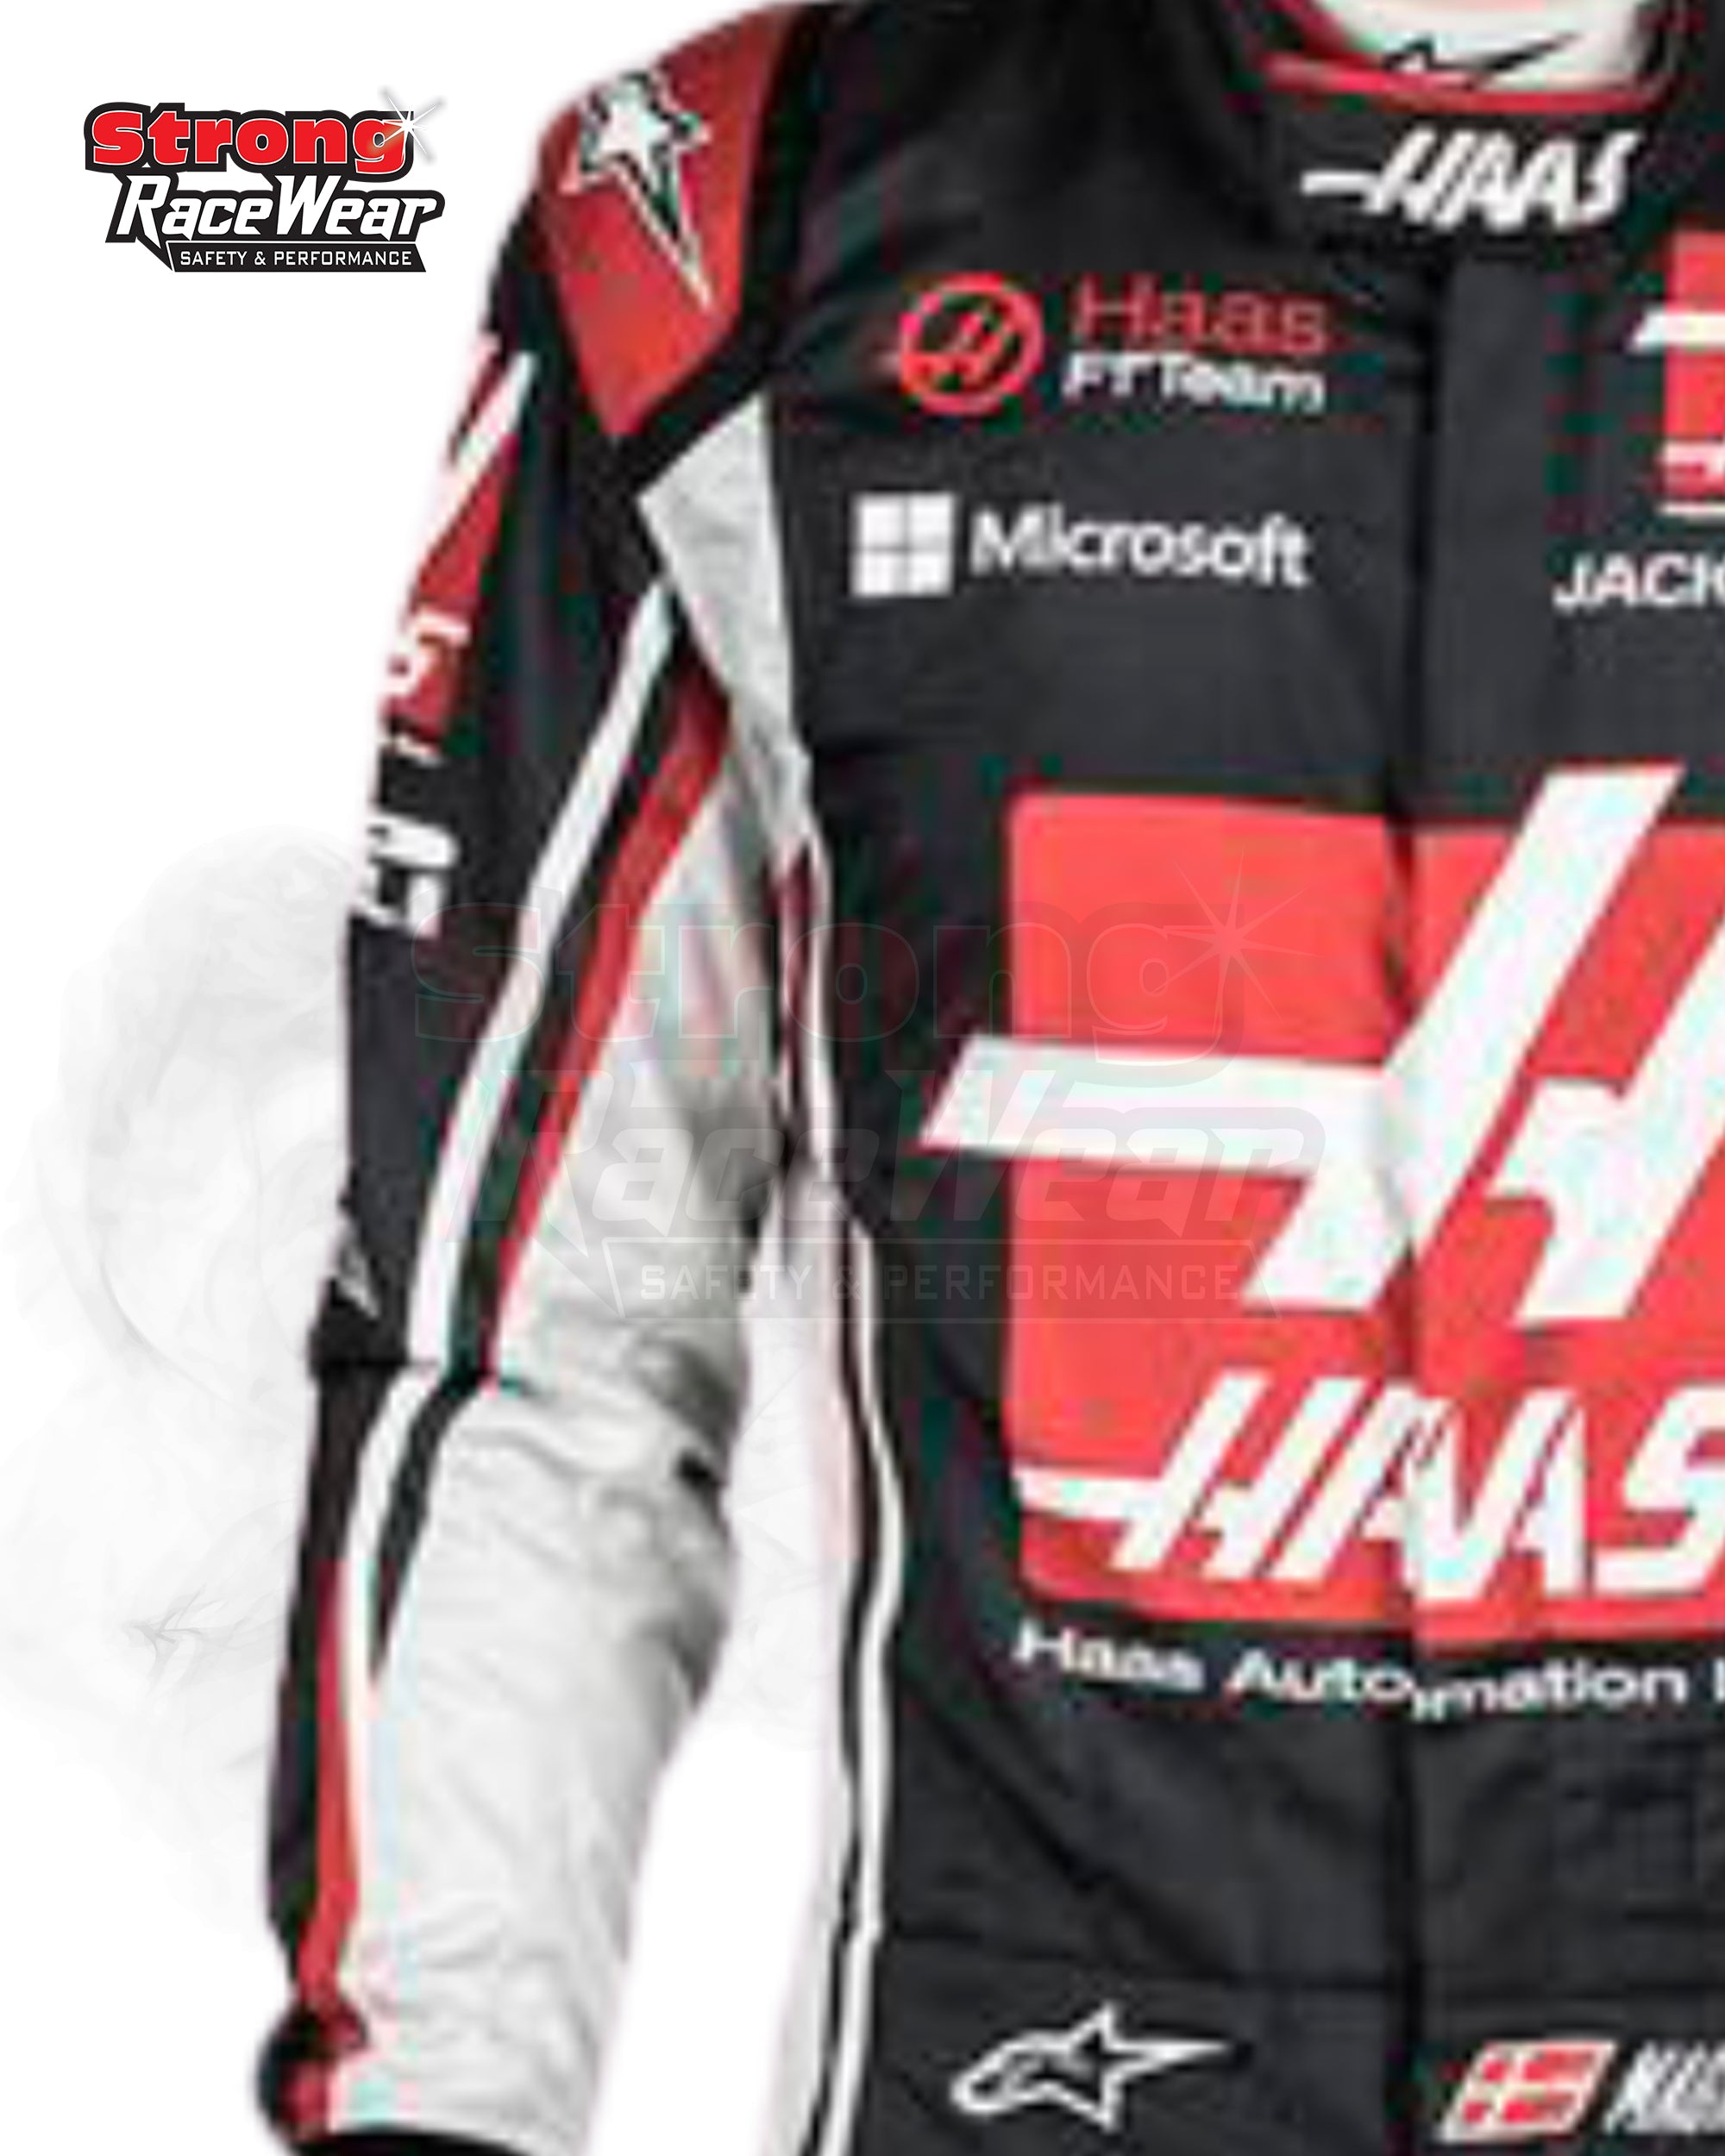 Kevin Magnussen Haas F1 Race Suit 2018